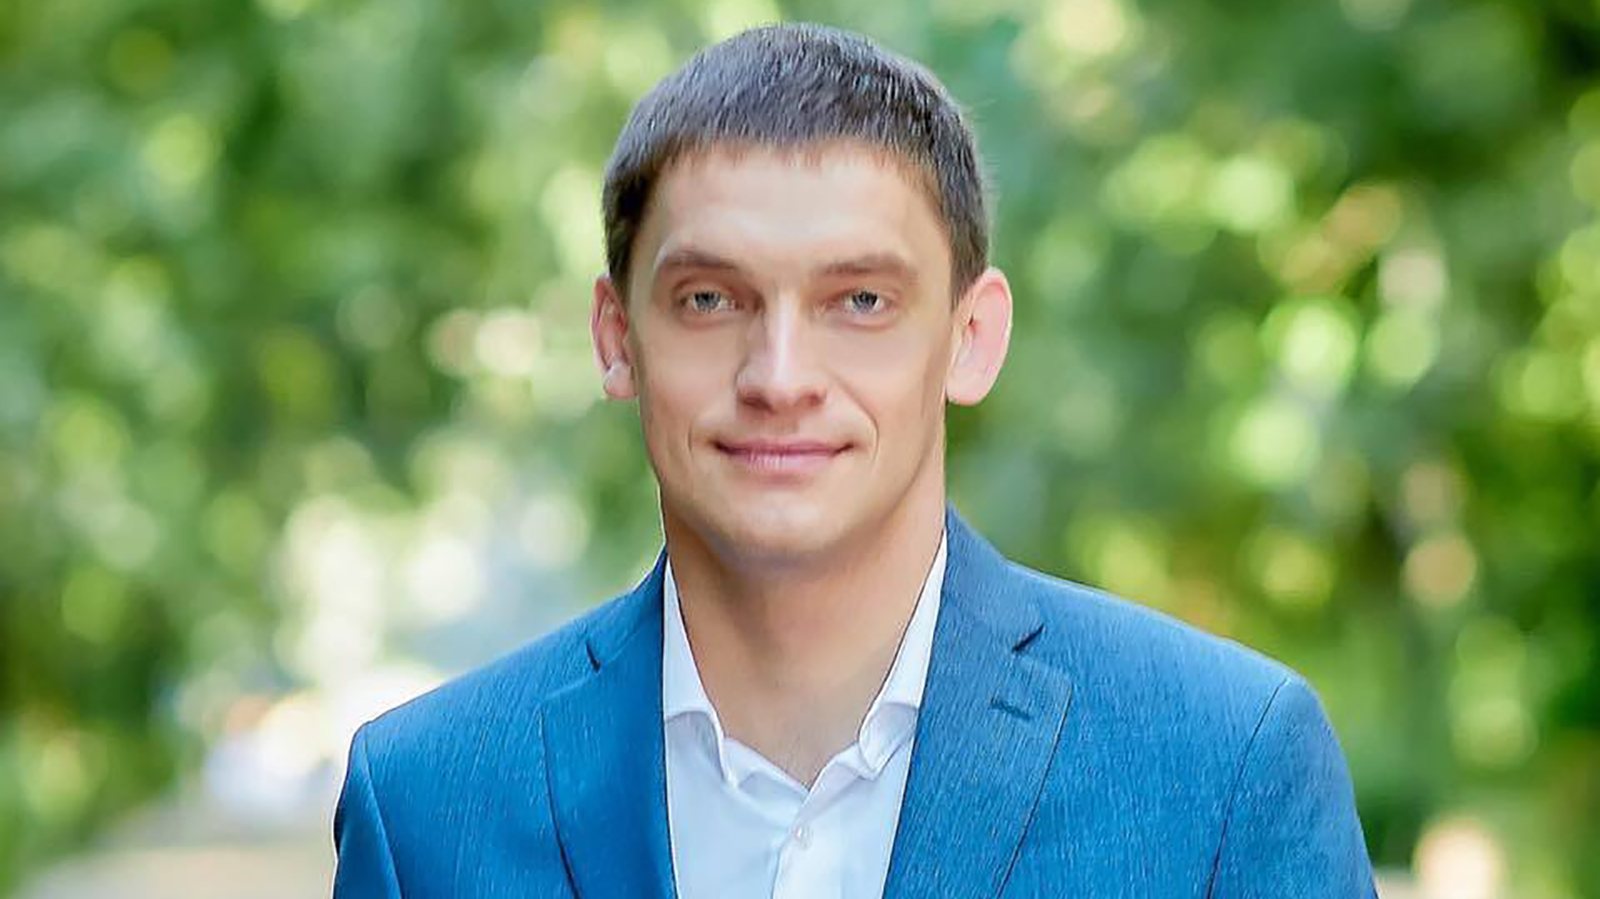 Ivan Fedorov, de 33 anos, é presidente da Câmara Municipal de Melitopol, no Oblast (região) de Zaporizhzhia, na Ucrânia, desde 2020